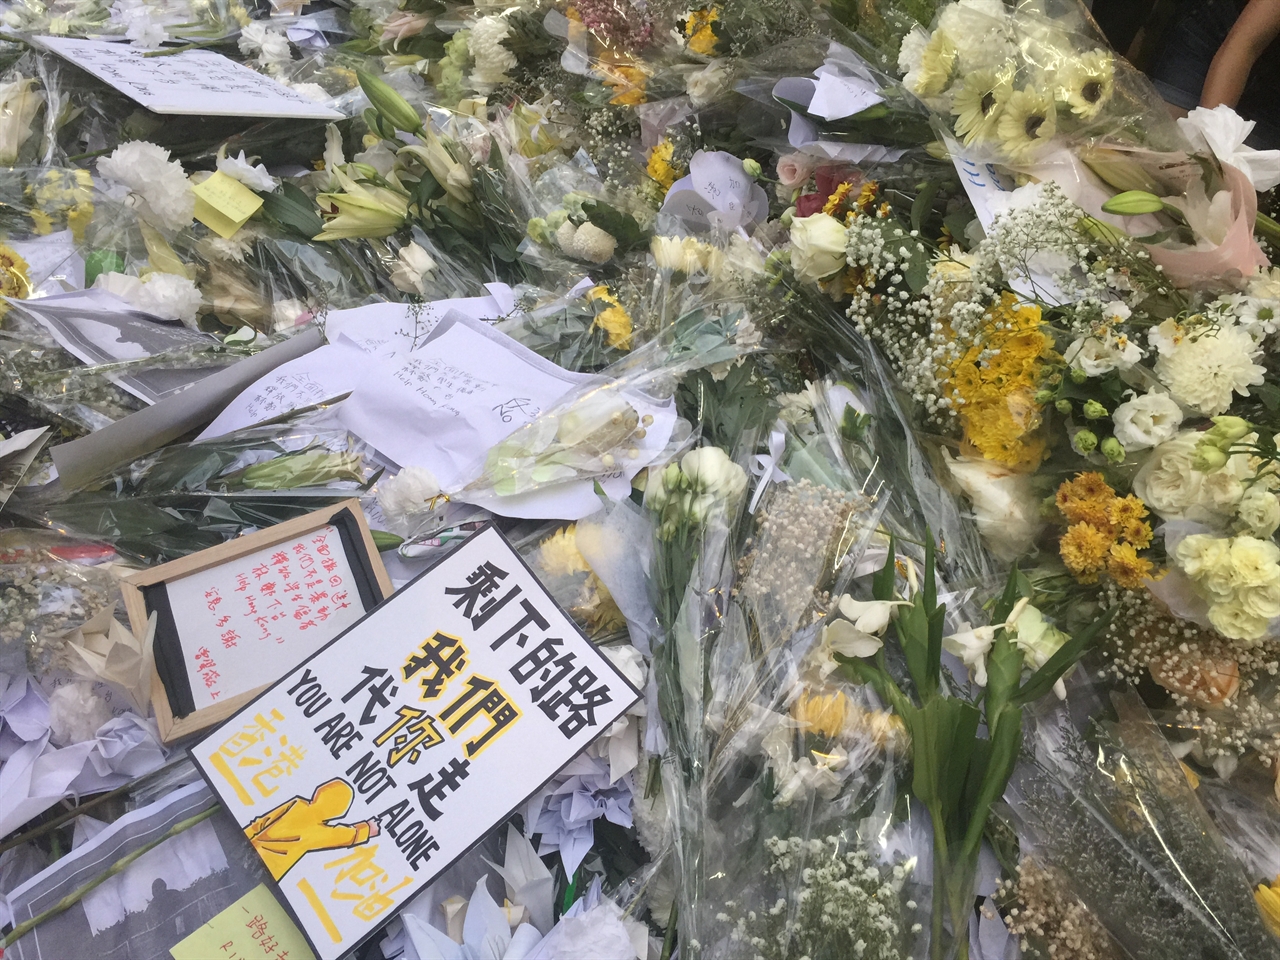 16일 검은옷행진에서 투신 자살한 량링제씨를 추모하는 헌화 꽃 위에 놓여진 포스터 '앞으로 남은 길은 우리가 가겠다. 당신은 혼자가 아니다'